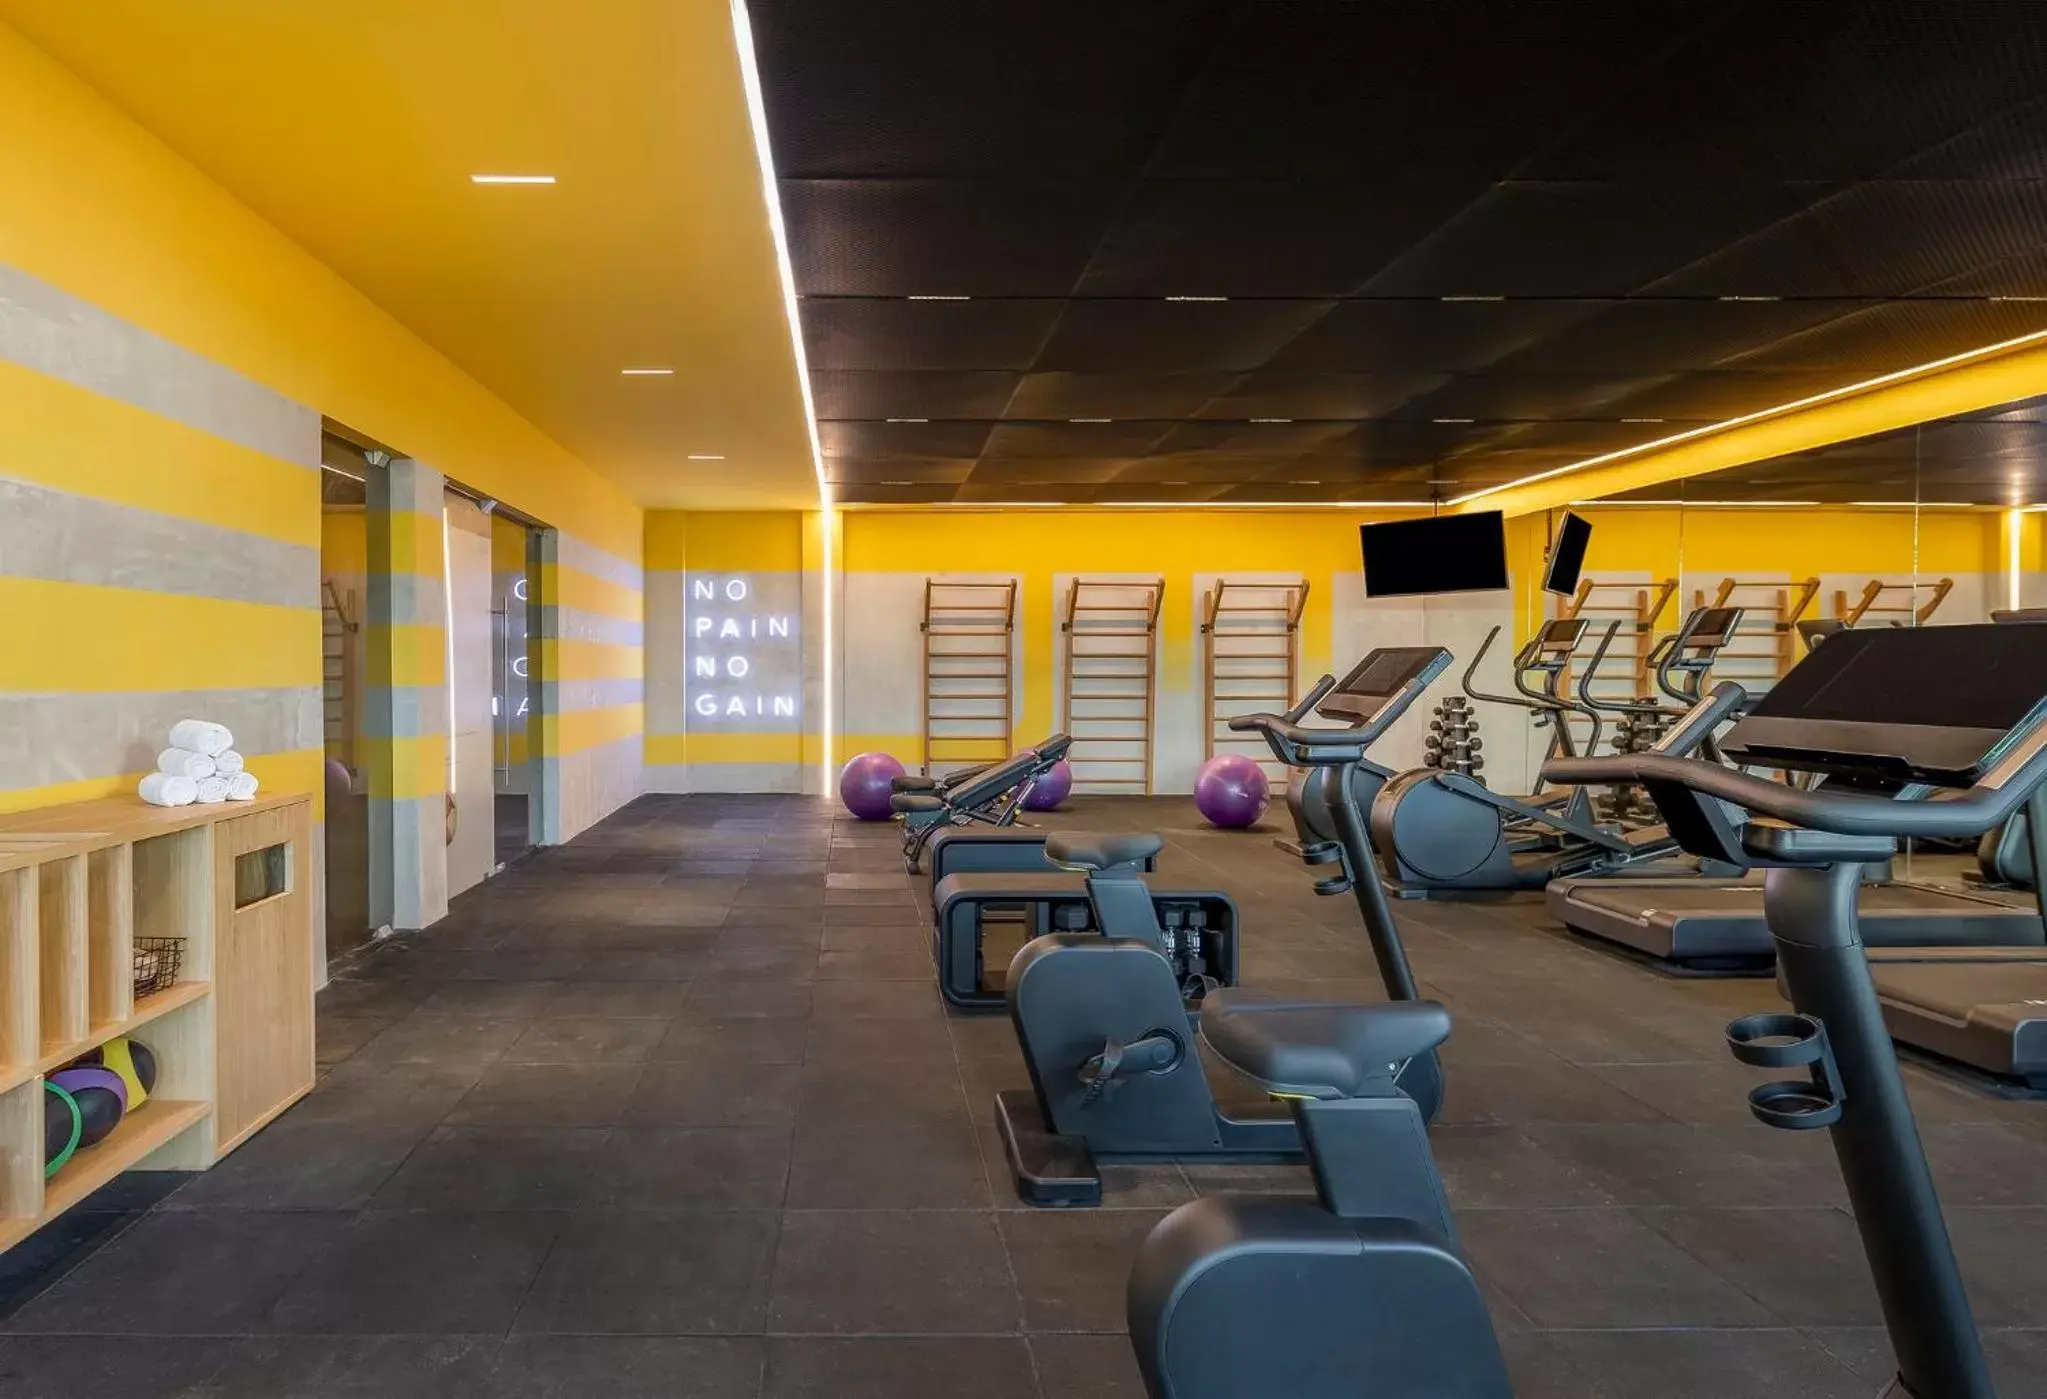 Fitness centre/facilities, Fitness Center/Facilities in Fiesta Americana Condesa Cancun - All Inclusive